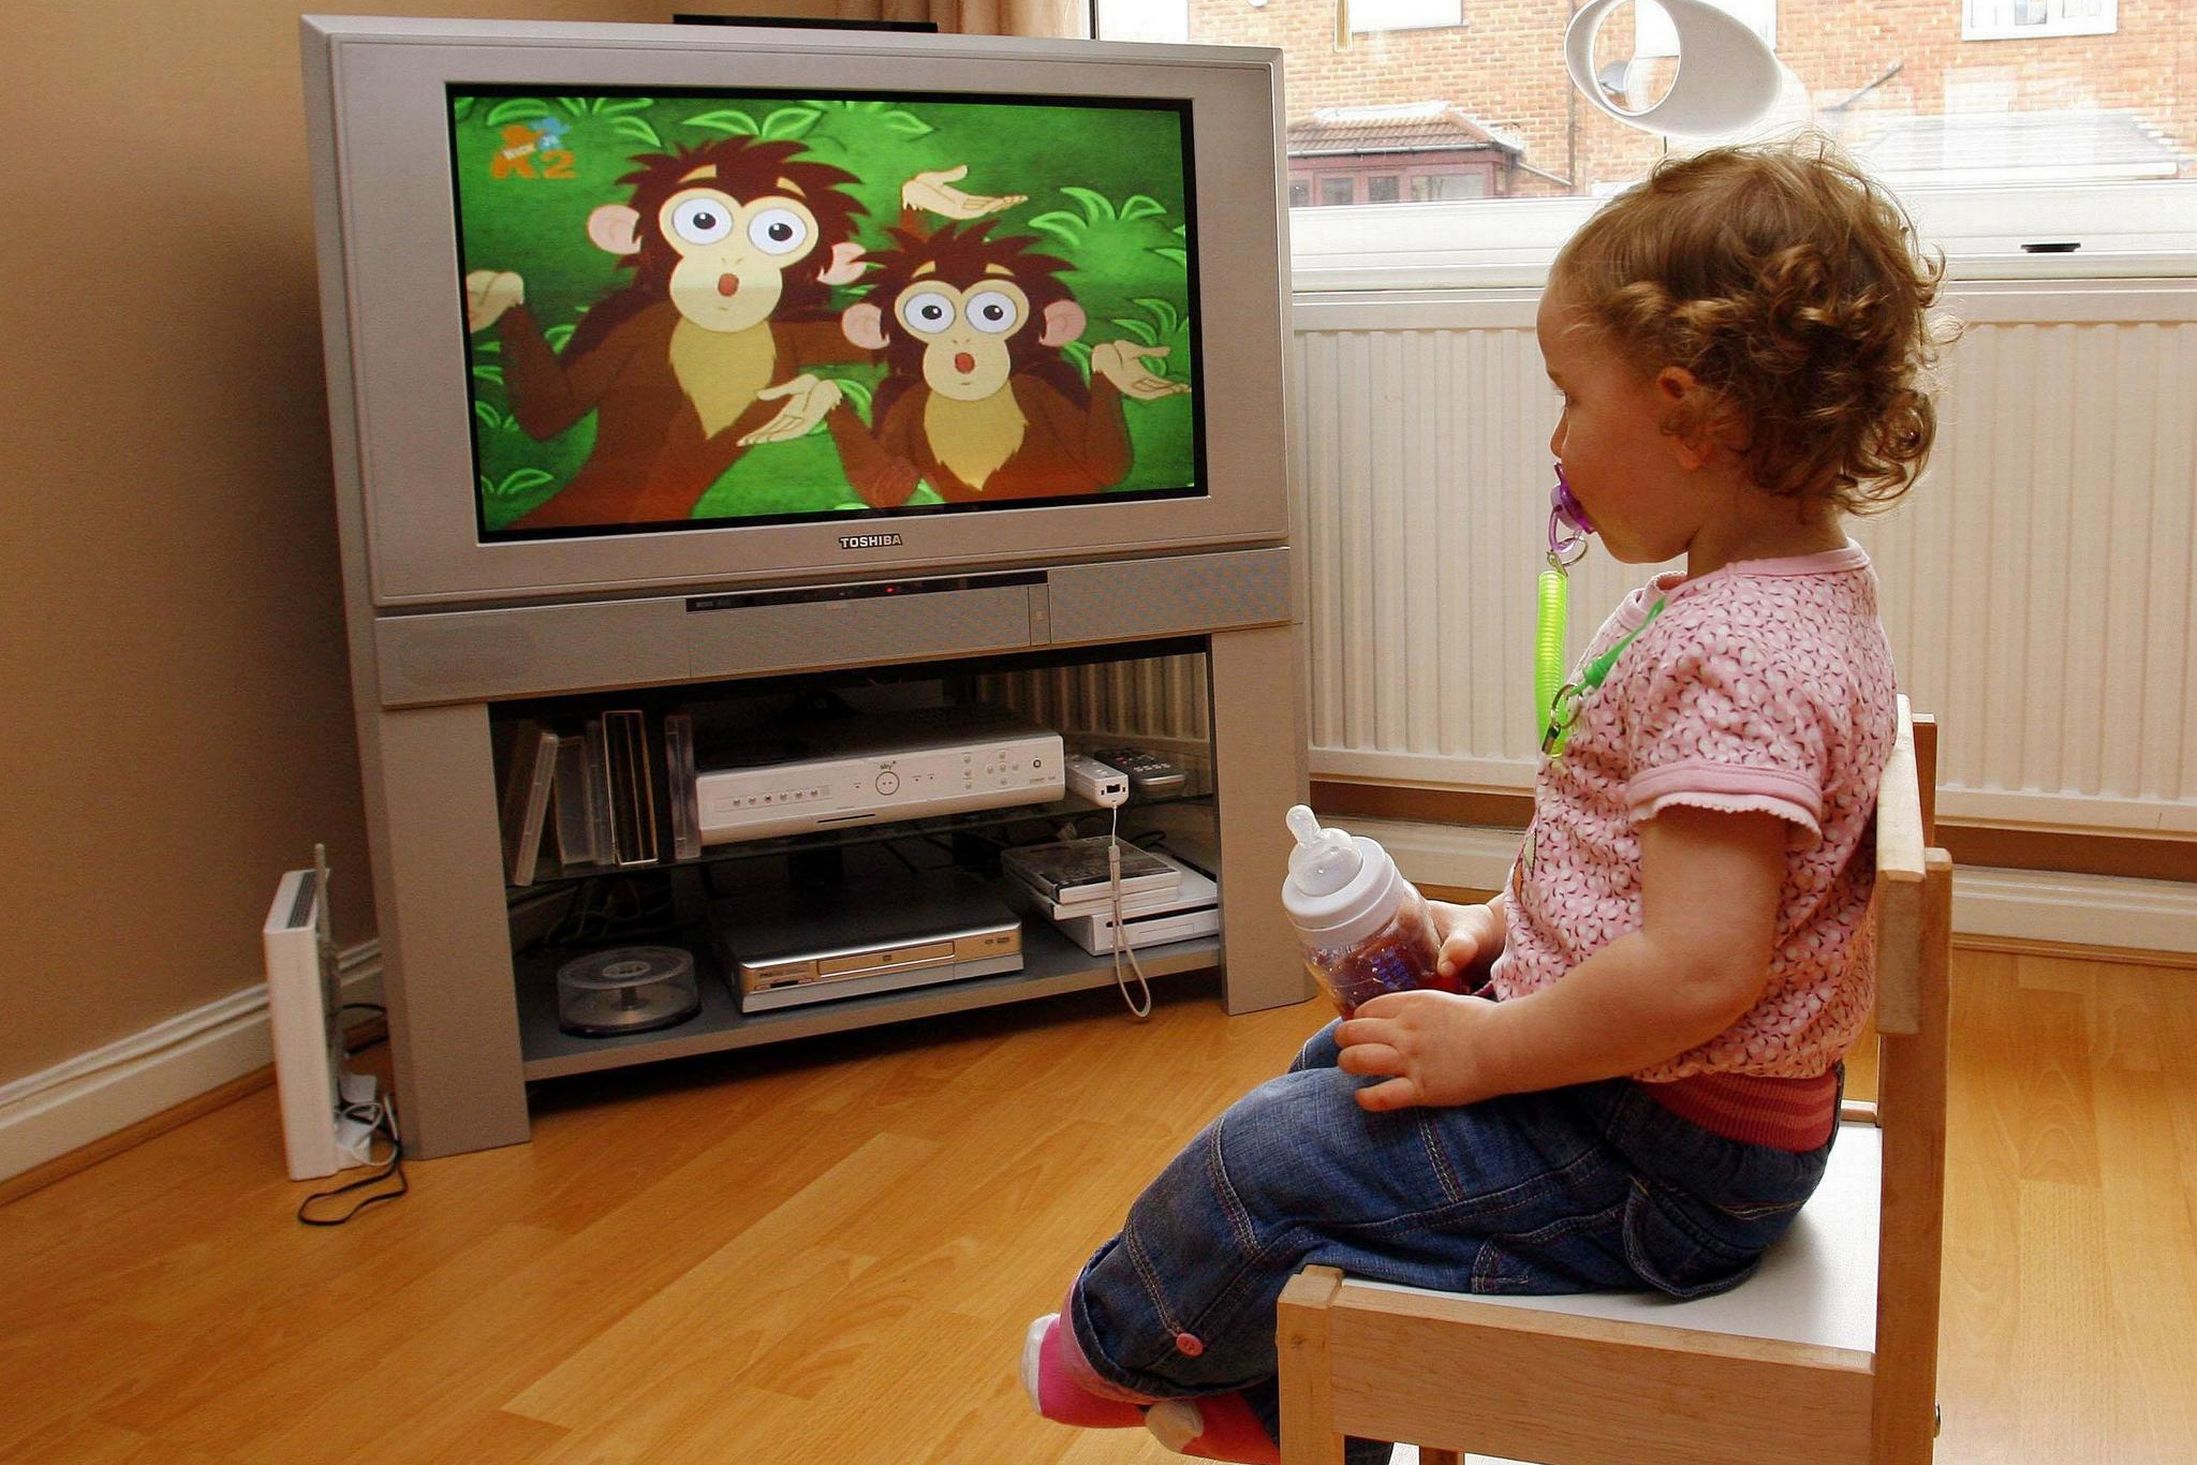 Телевизор и дети: есть ли место телевидению в детском досуге